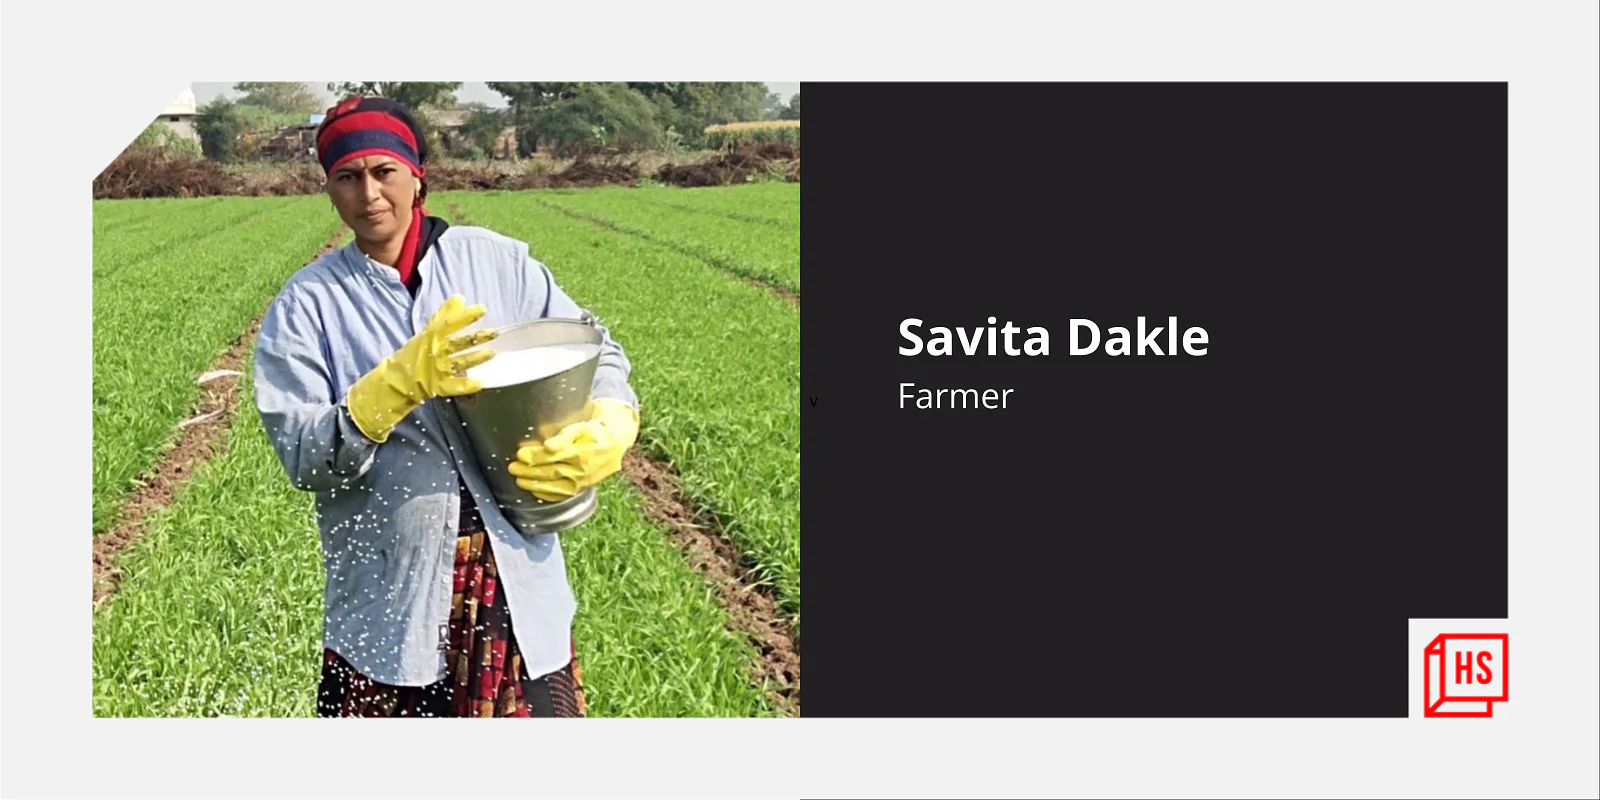 10वीं में पढ़ाई छोड़ने से लेकर 10 लाख भारतीय महिला किसानों को फेसबुक पर एक साथ लाने तक, कुछ ऐसी है सविता डकले की कहानी